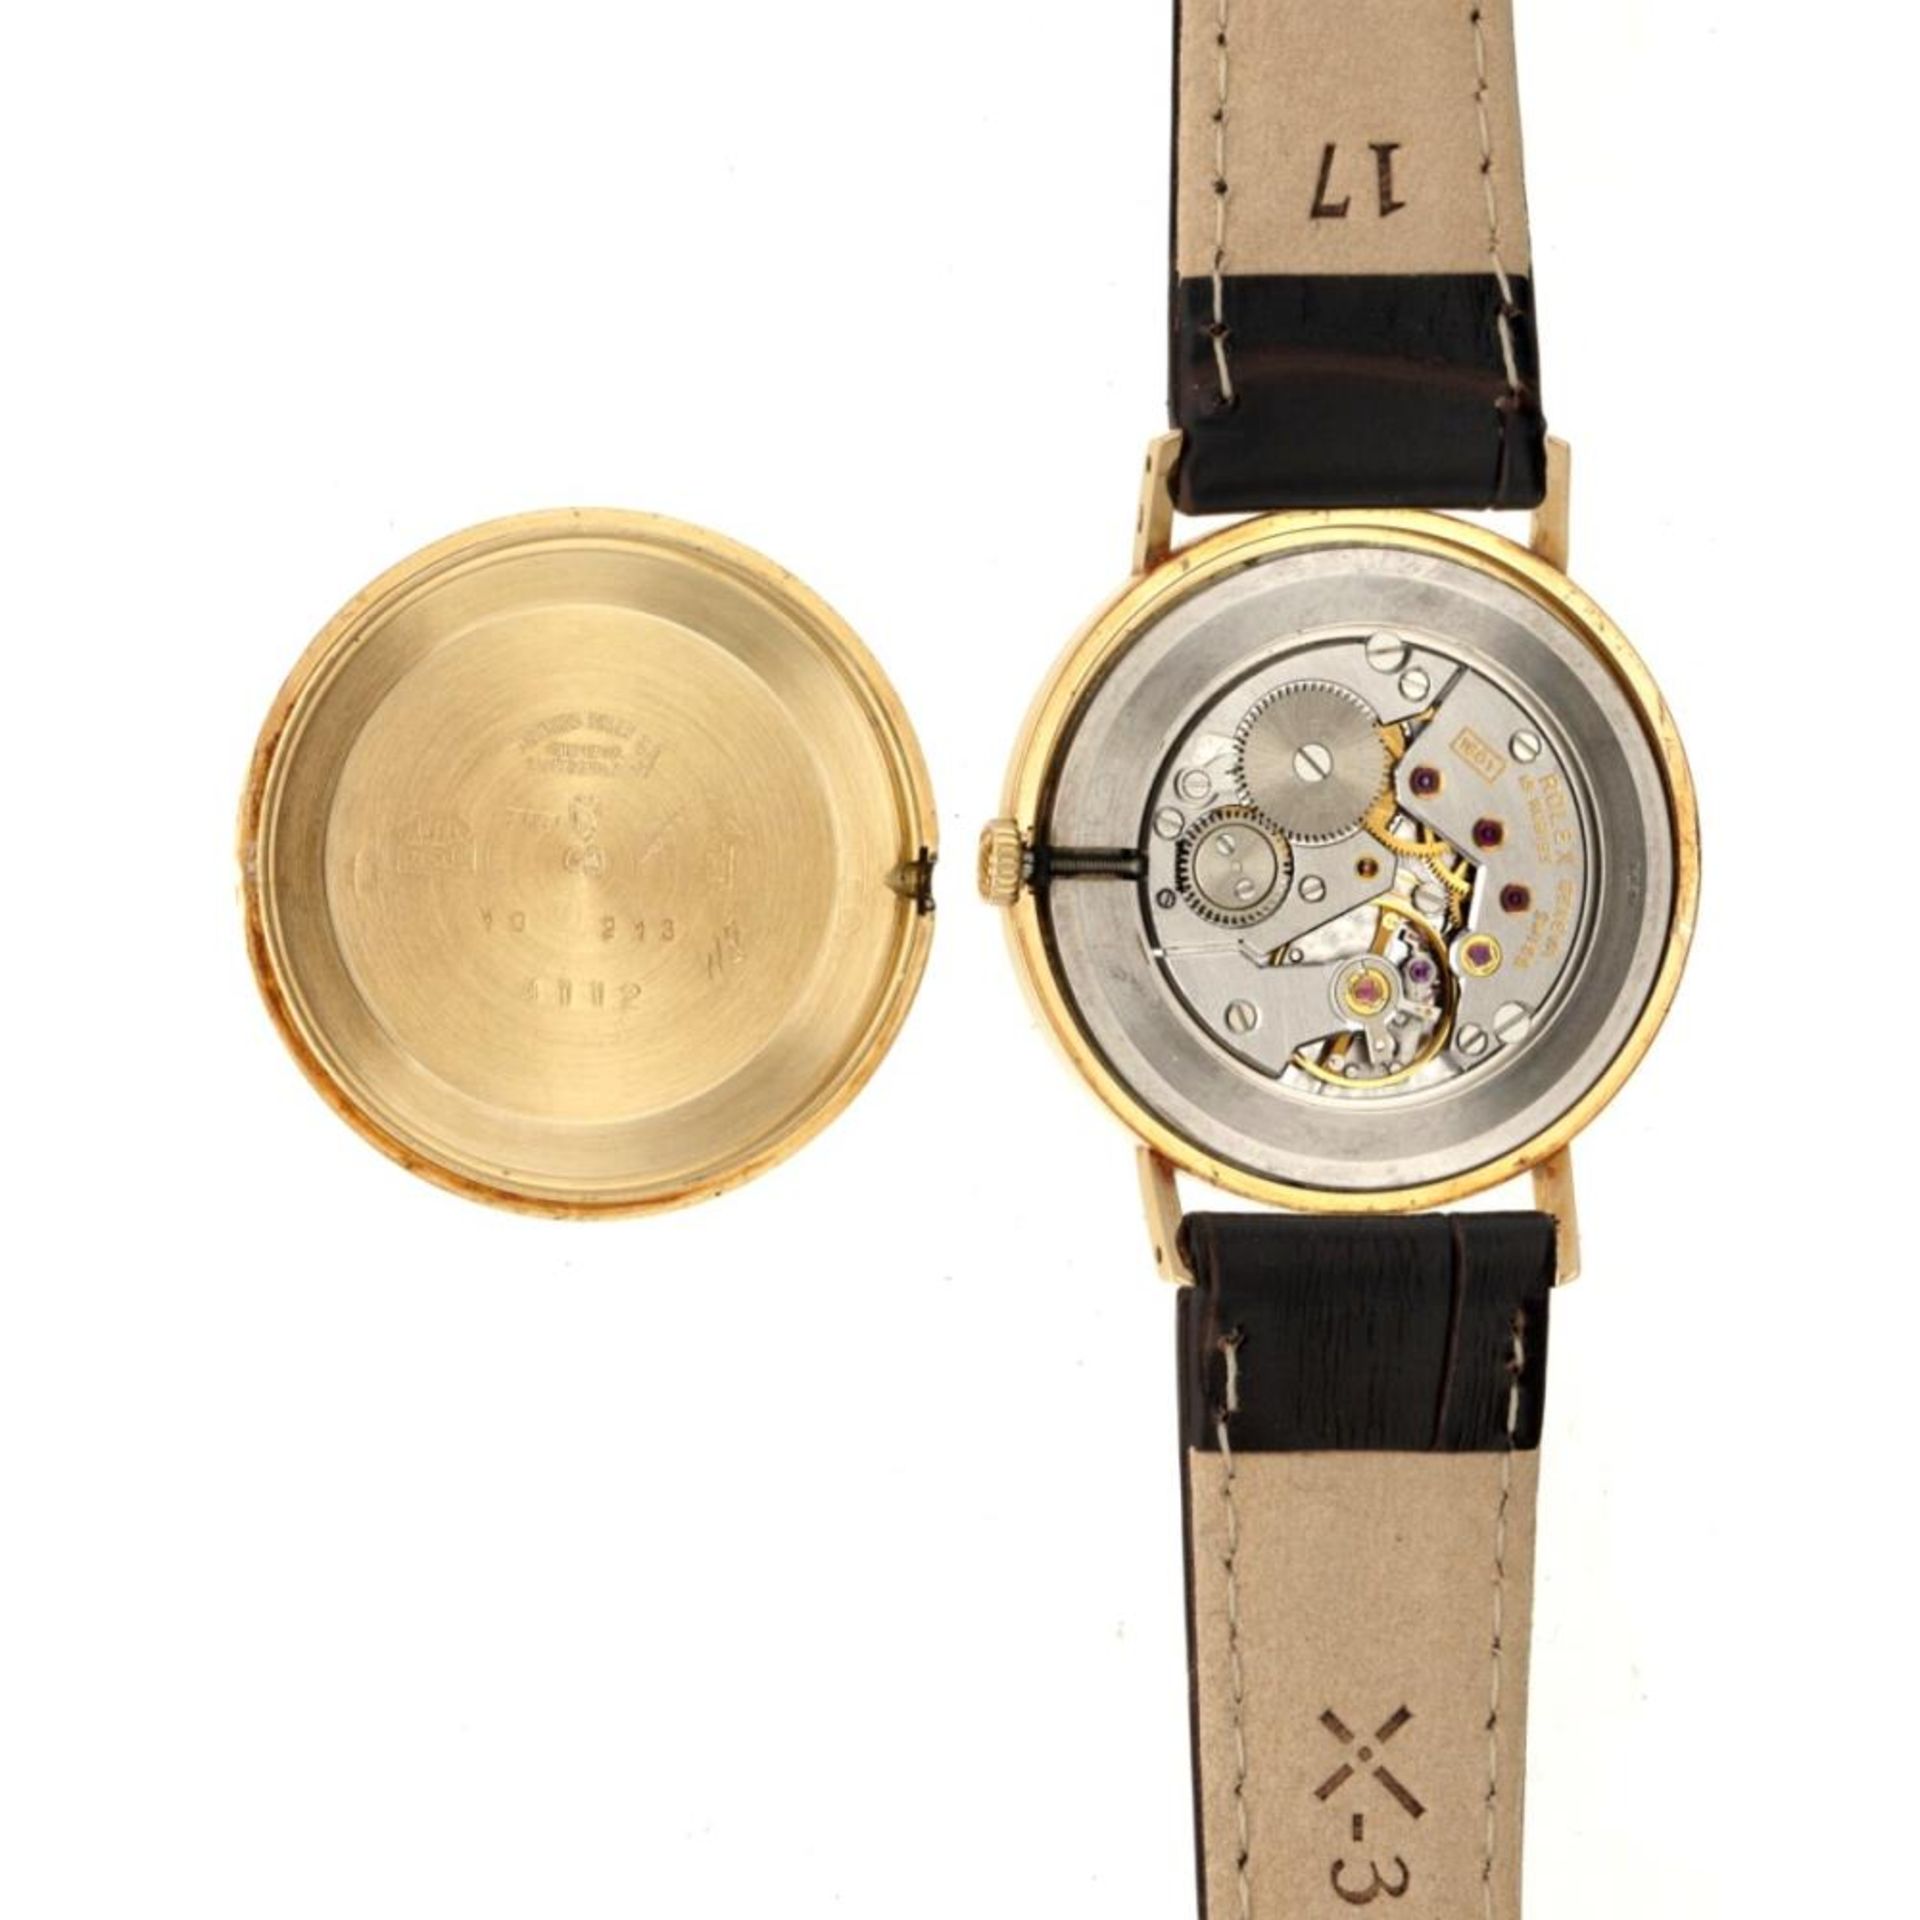 Rolex Cellini 4112 - Men's watch - approx. 1995. - Bild 6 aus 6